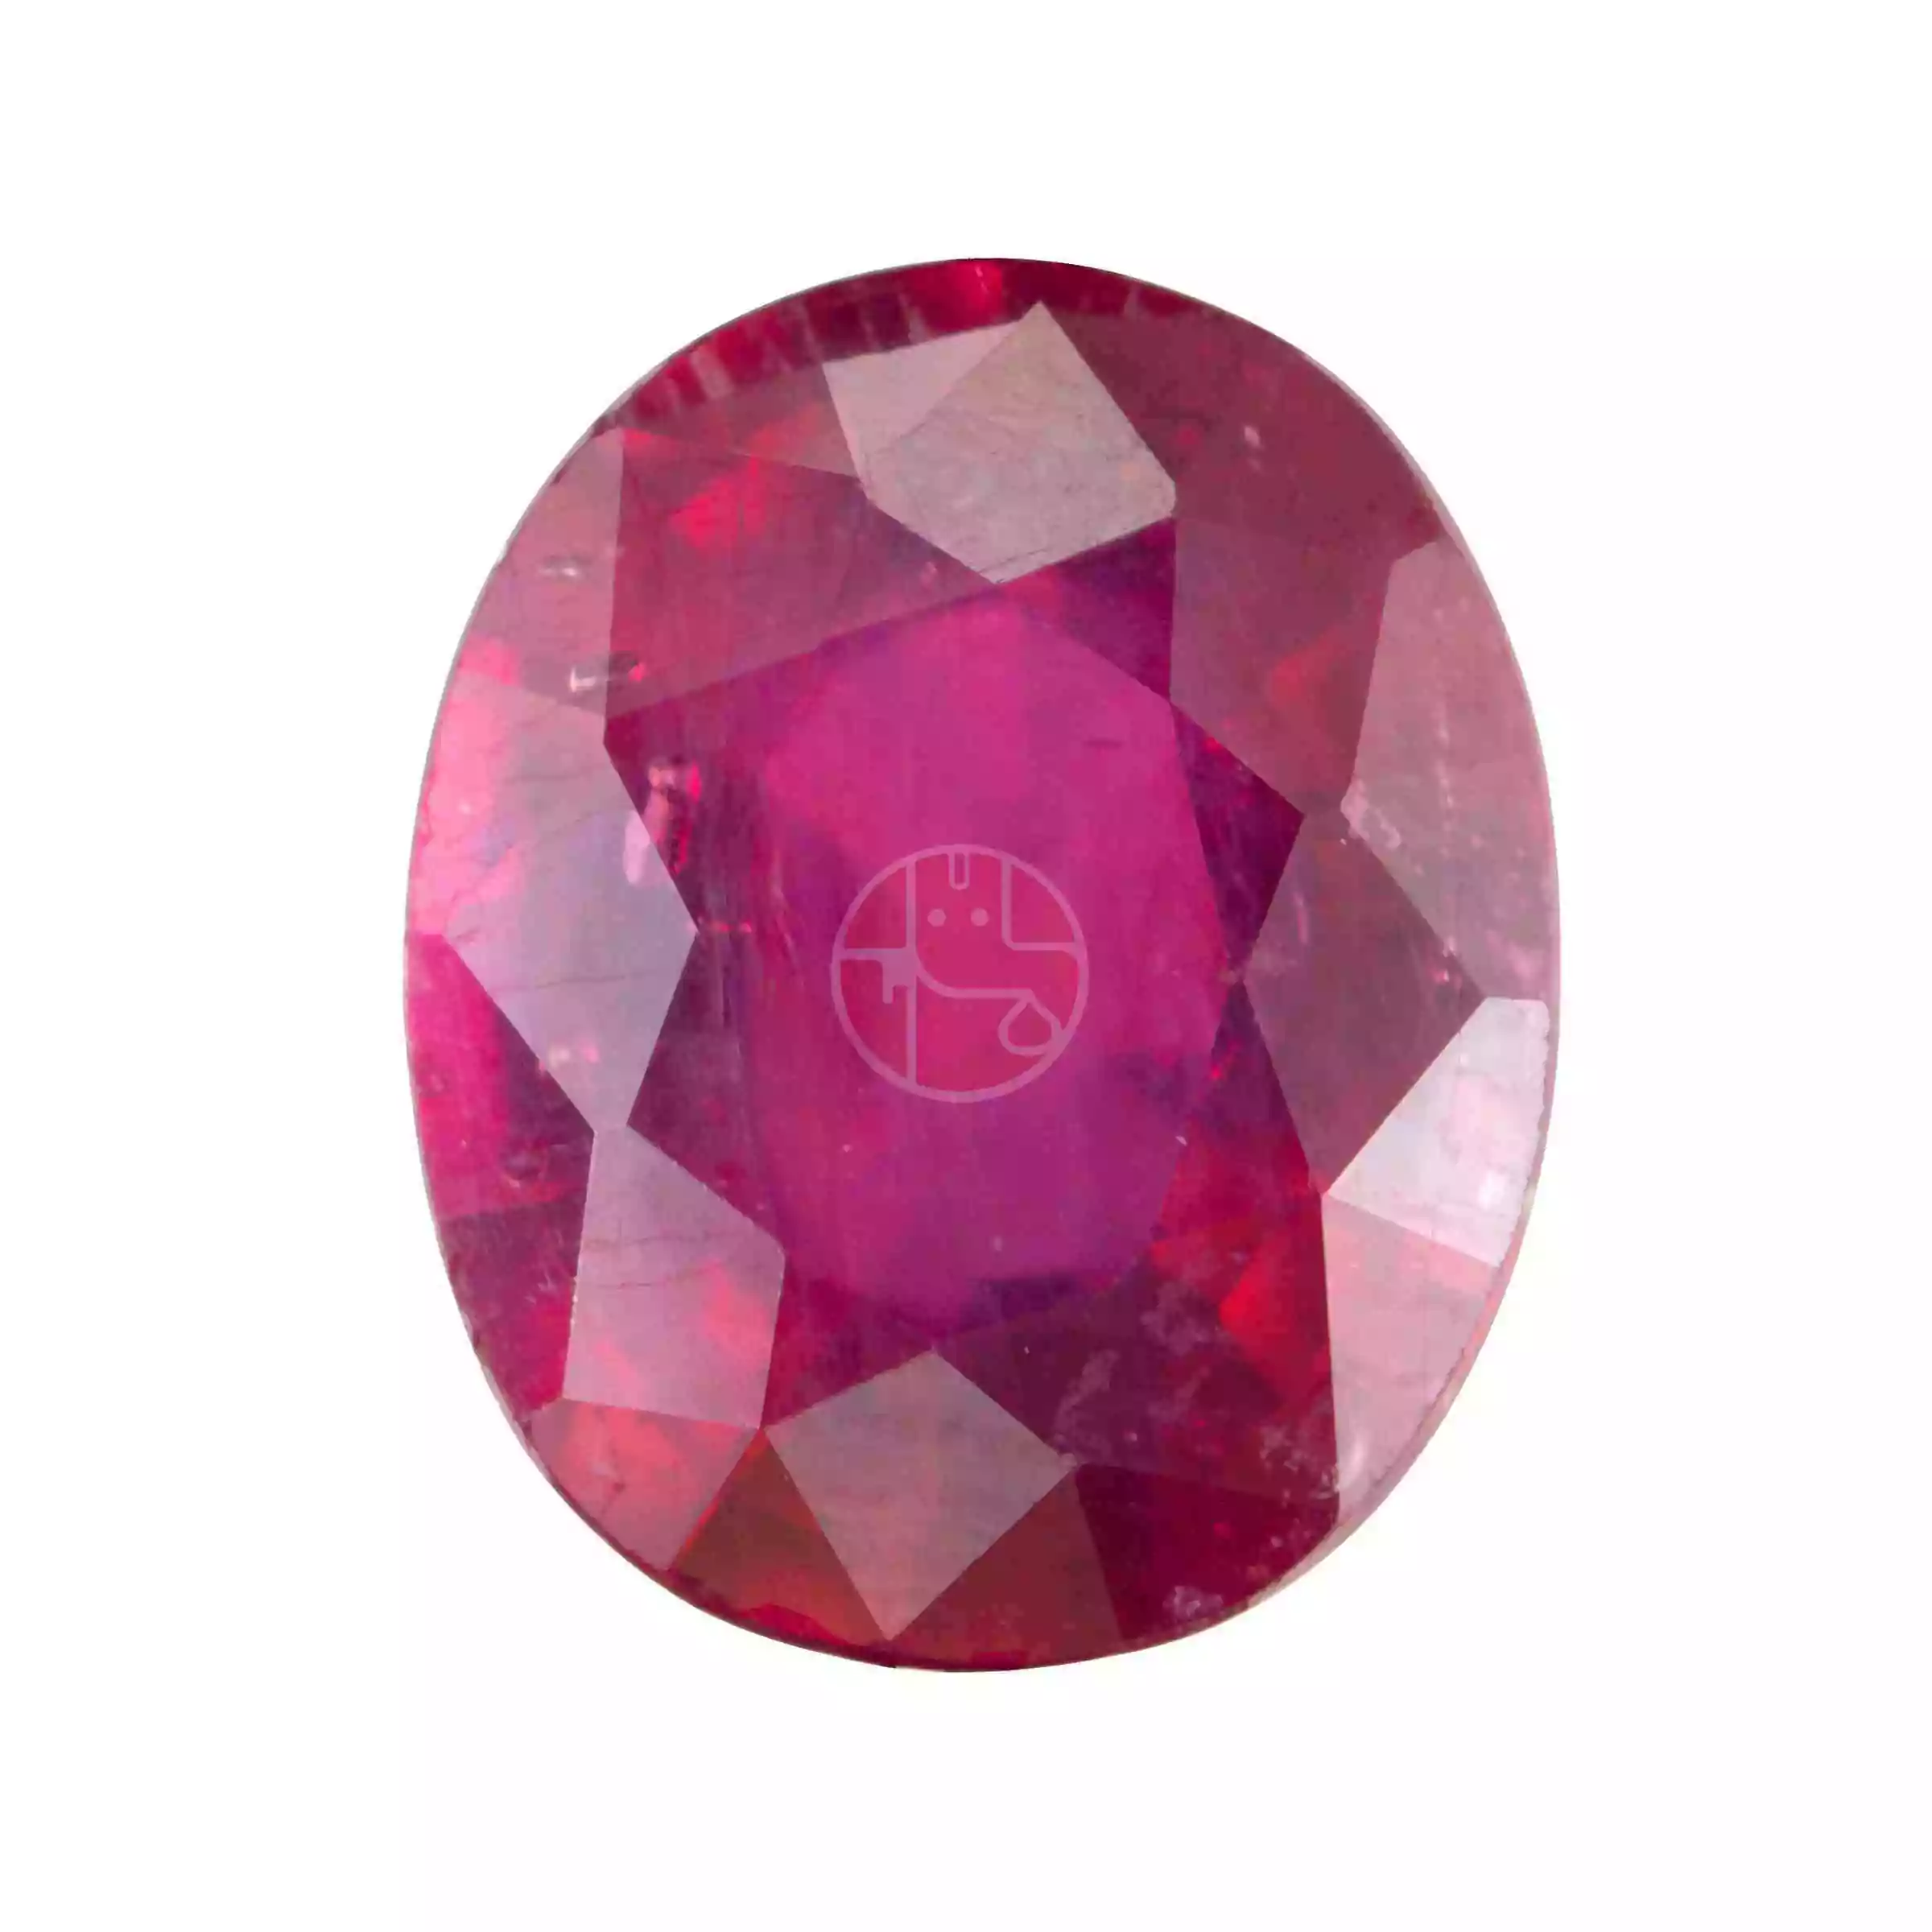 Ruby (Manik) Gemstone – 2.25